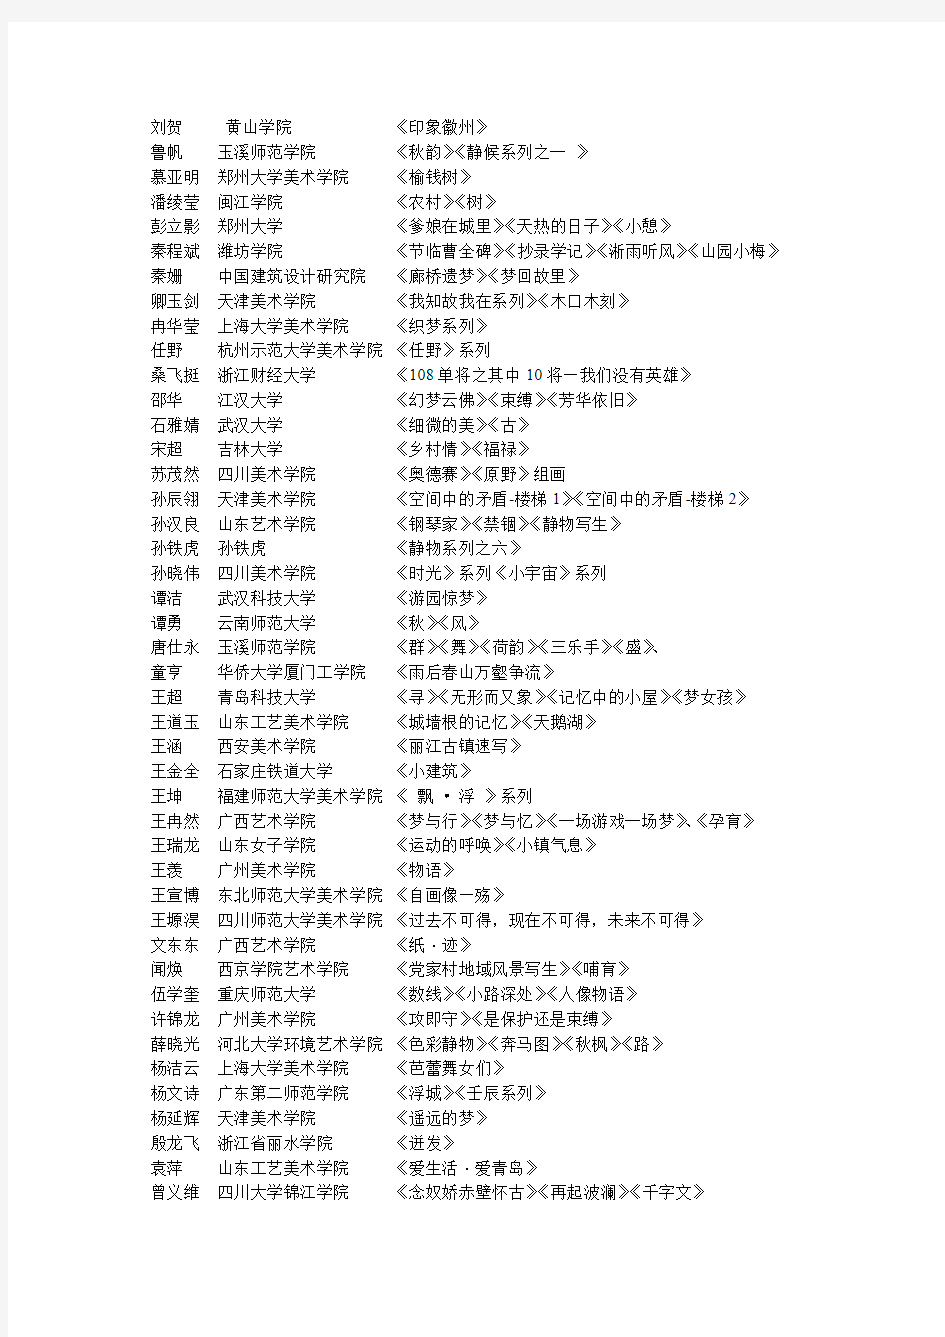 2013中国大学生艺术作品展(美术展)初审合格名单(第二批)